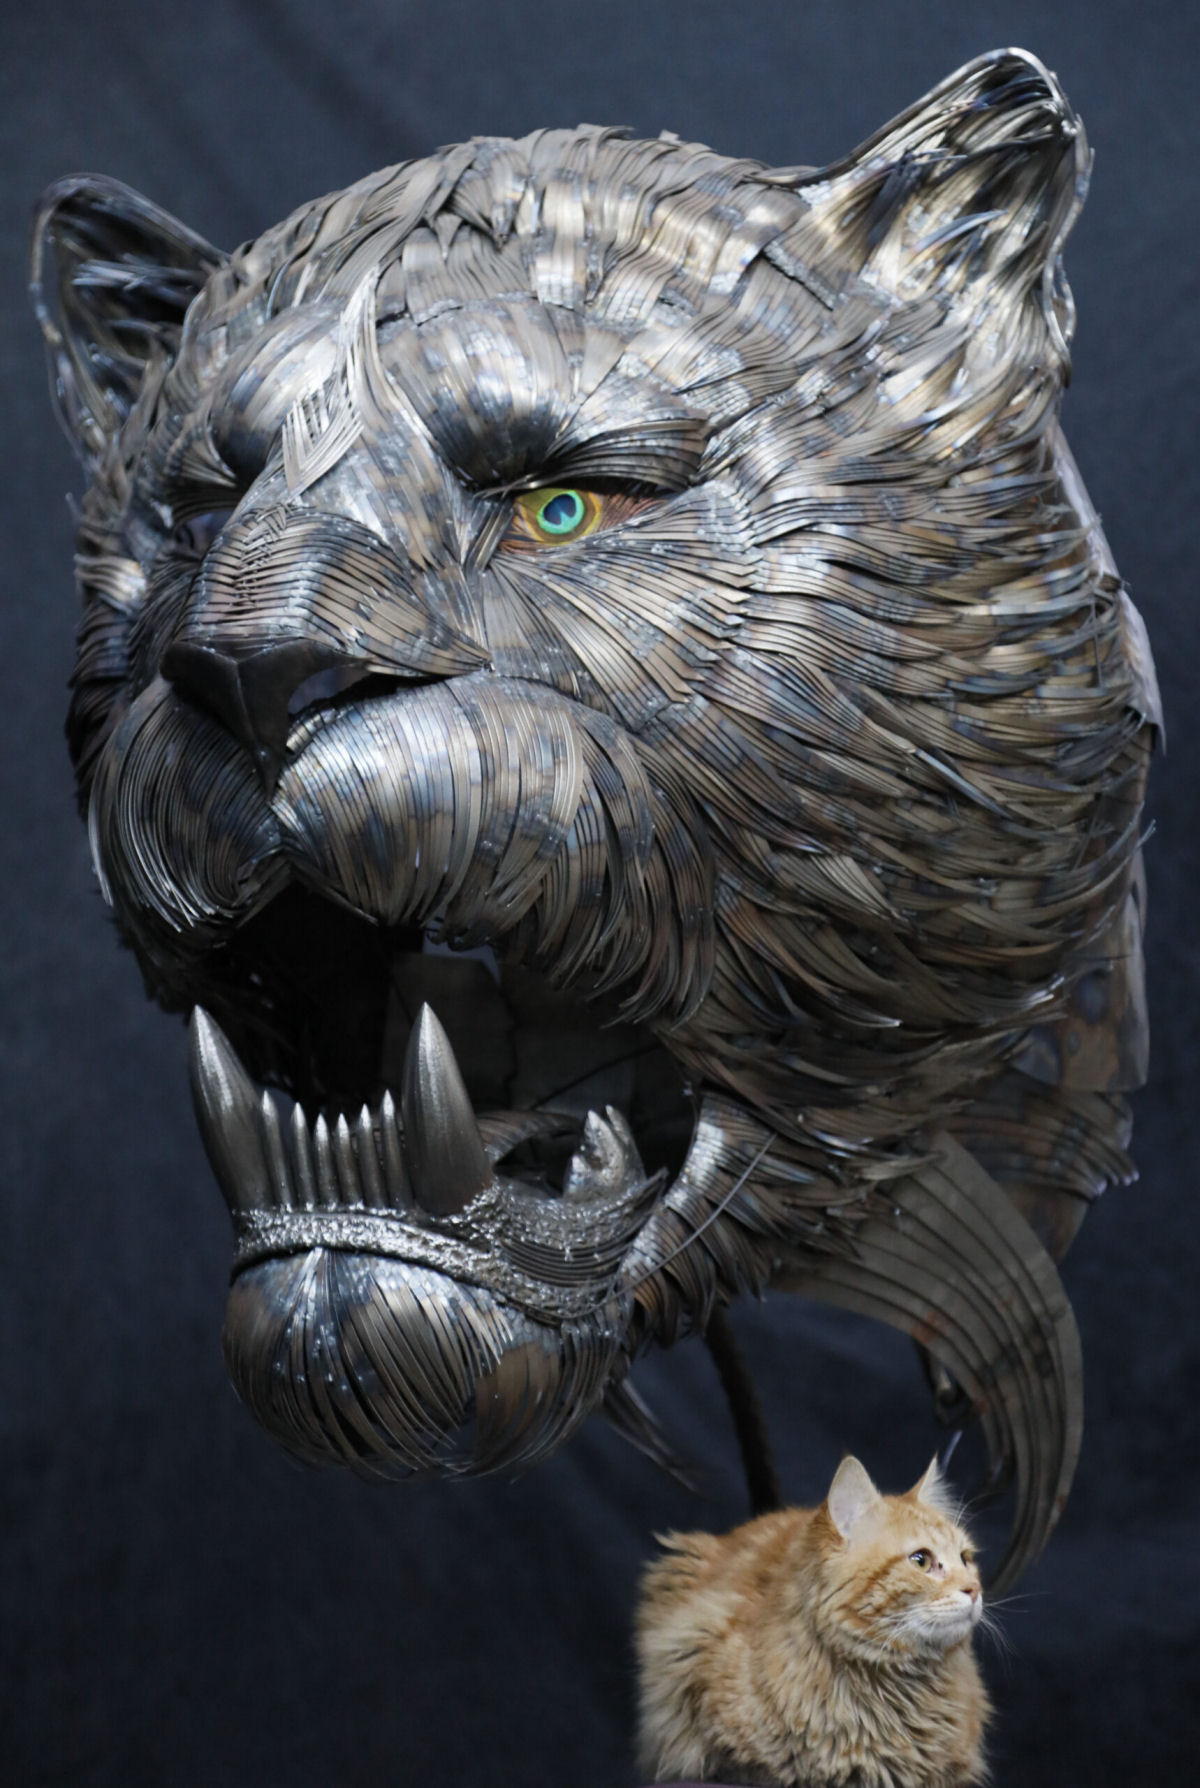 Espantosas esculturas de metal reciclado do vida a grandes felinos 02